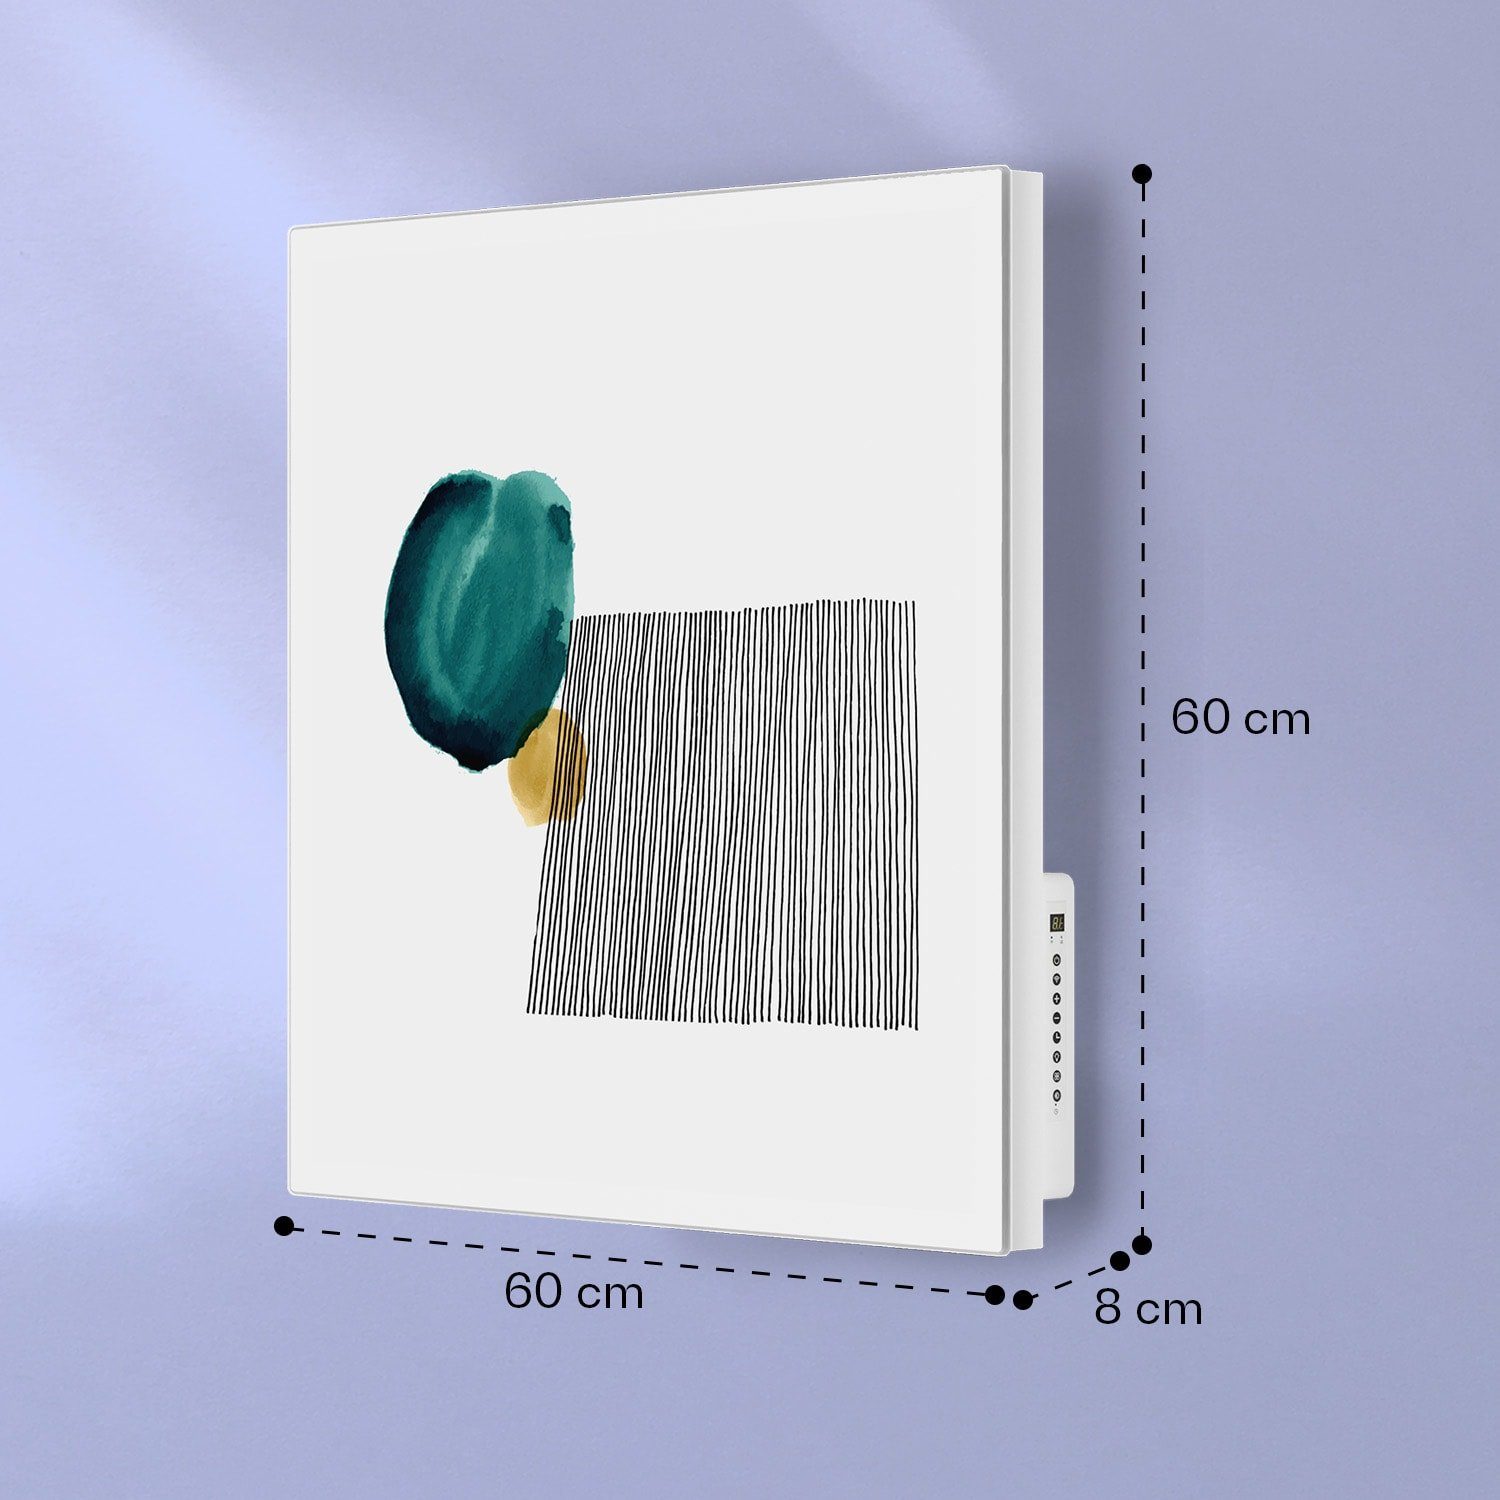 Bild Thermostat abstract, Wandheizung Mojave elektrische 500 elektrisch Heizung Klarstein Heizkörper Smart W Infrarot